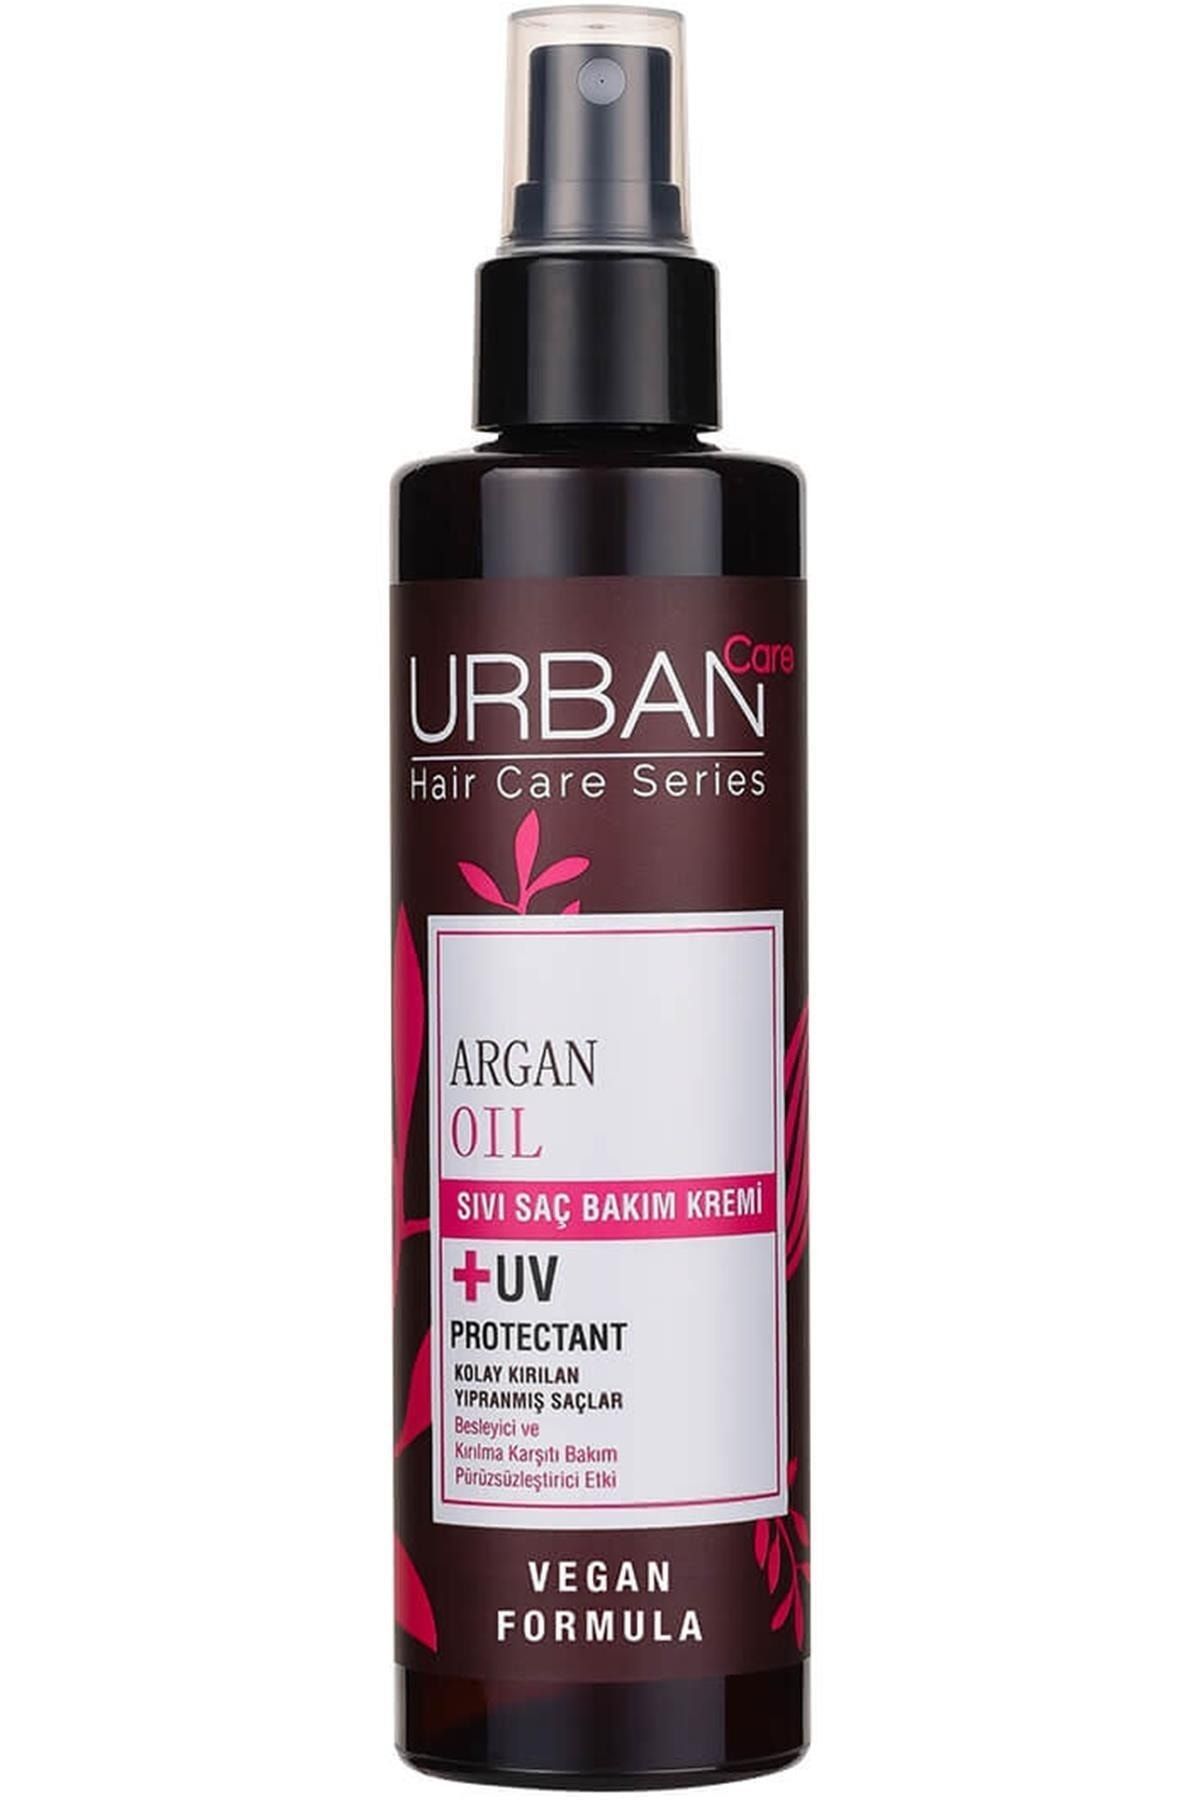 Urban Care کرم مراقبت موی مایع با روغن آرگان 200 میلی لیتر